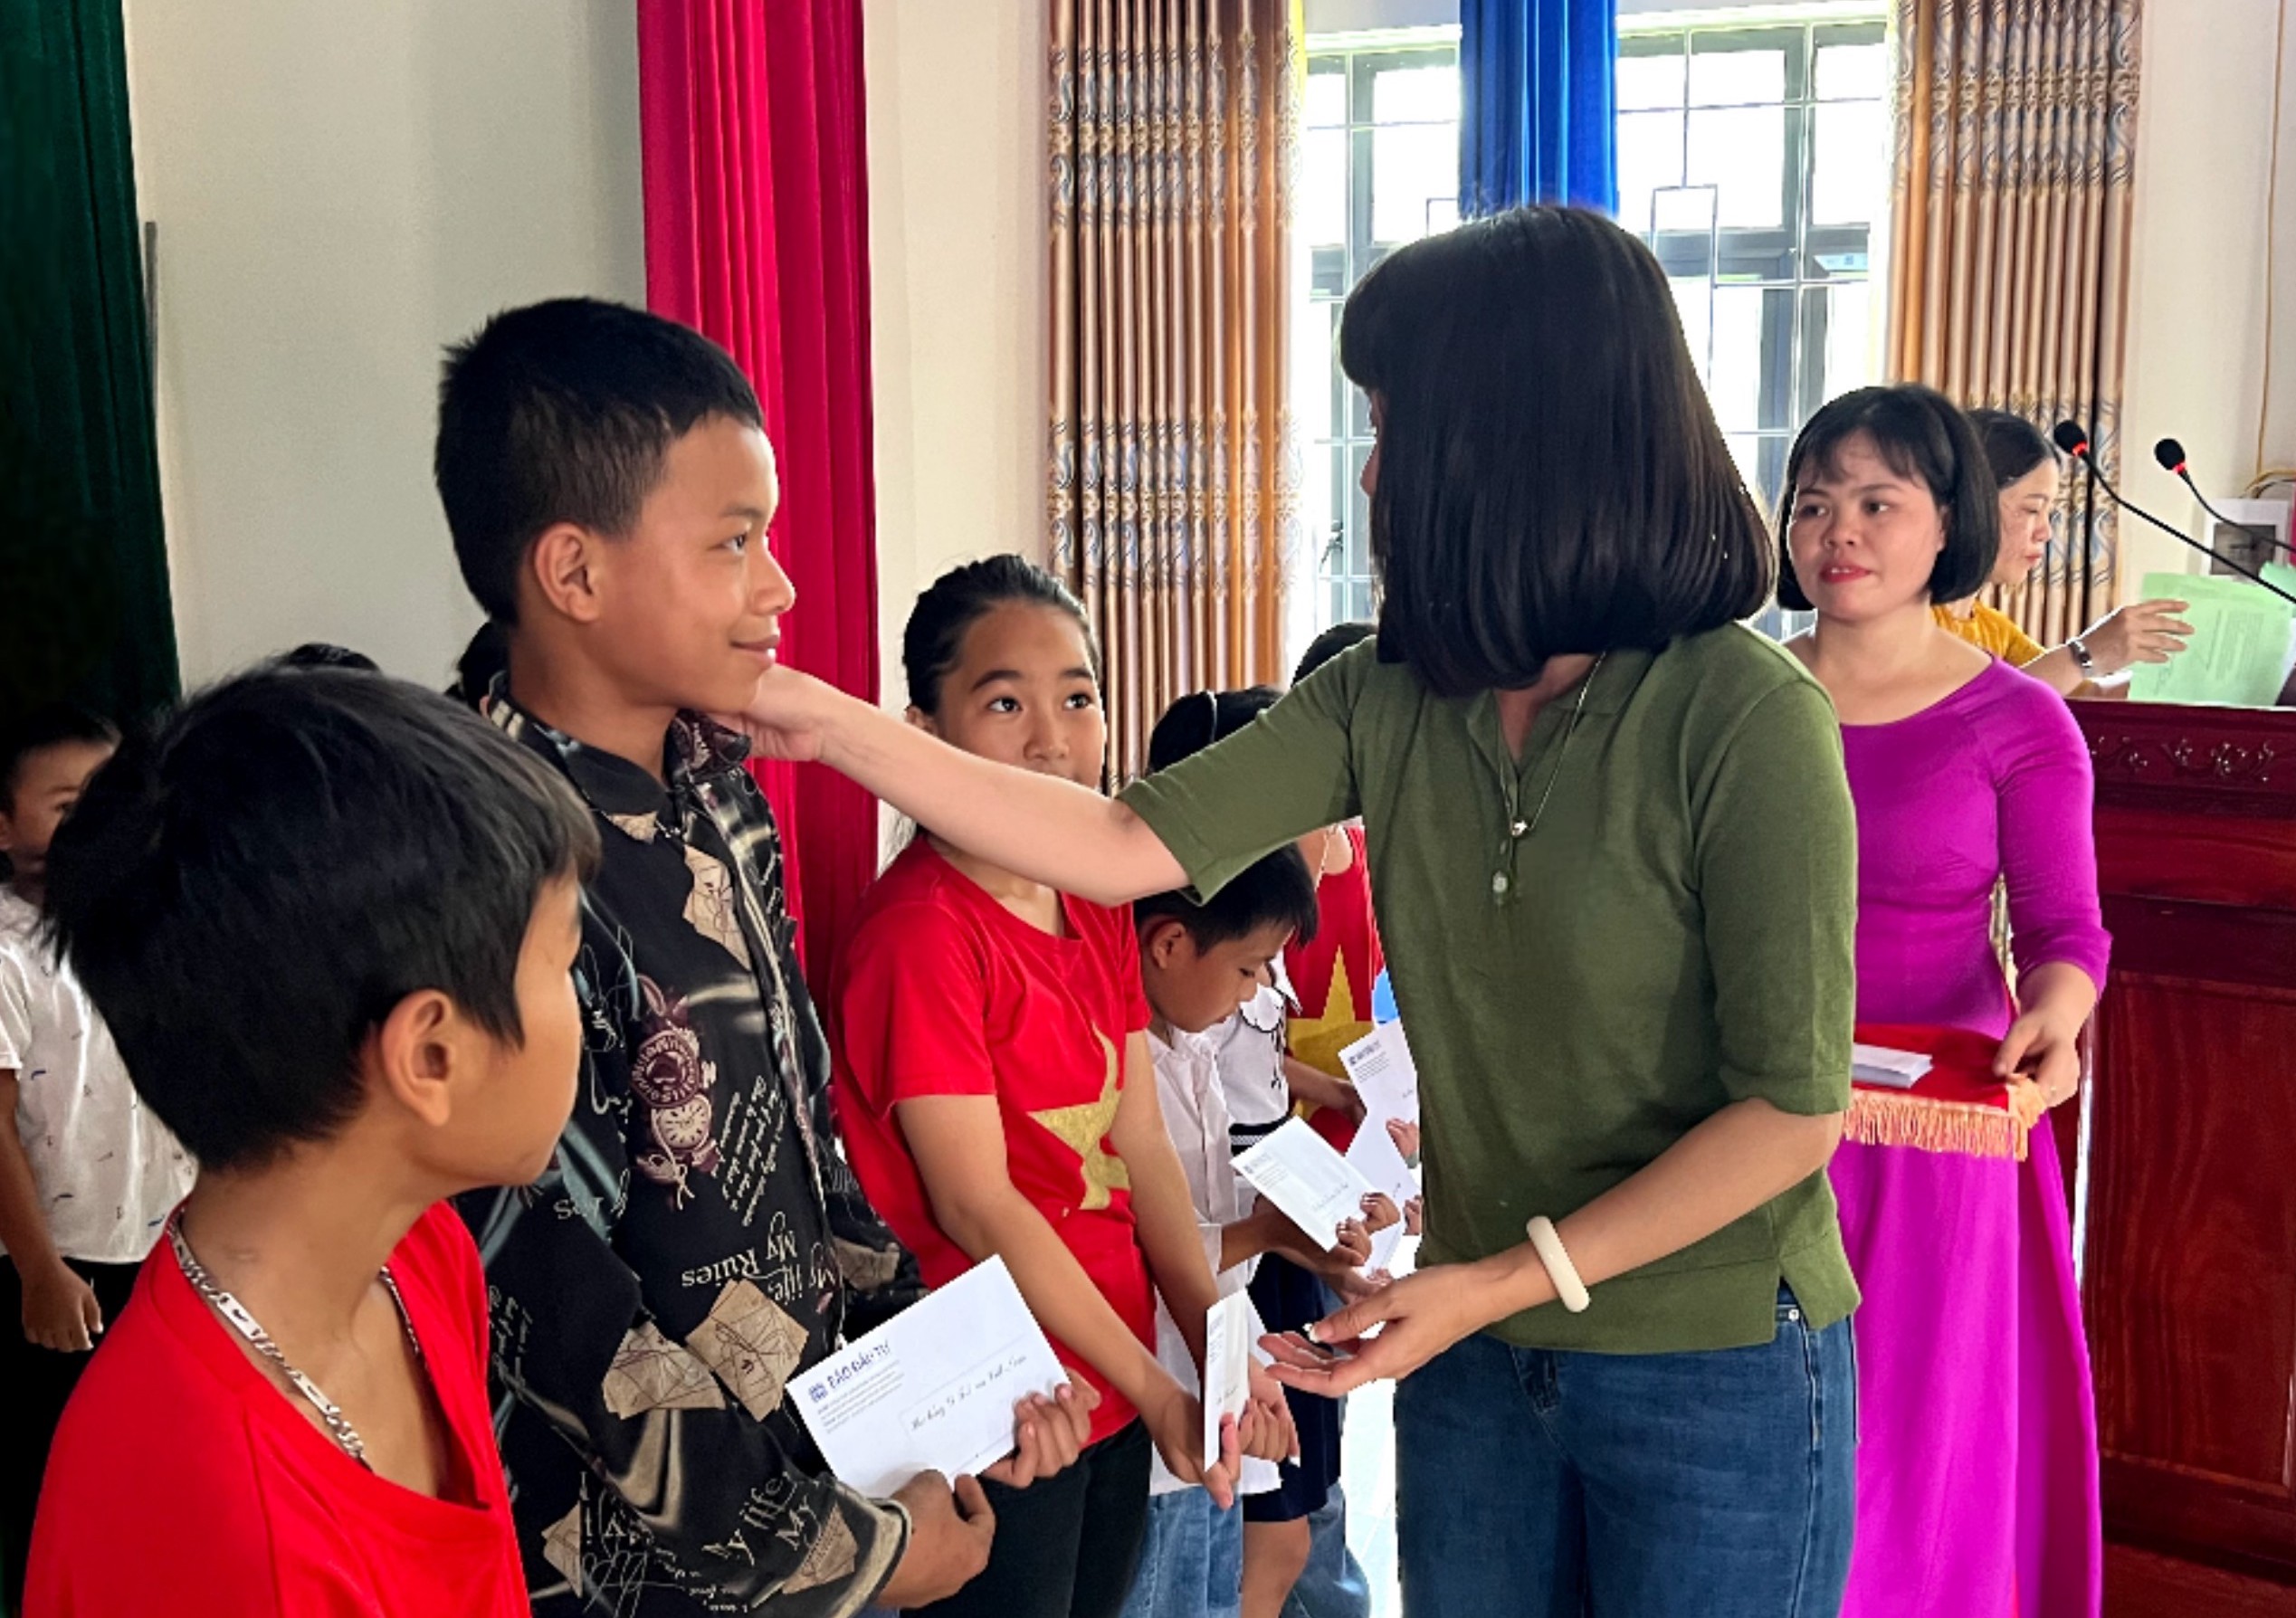 Học bổng “Vì trẻ em Việt Nam” đến với học sinh tỉnh Hà Tĩnh